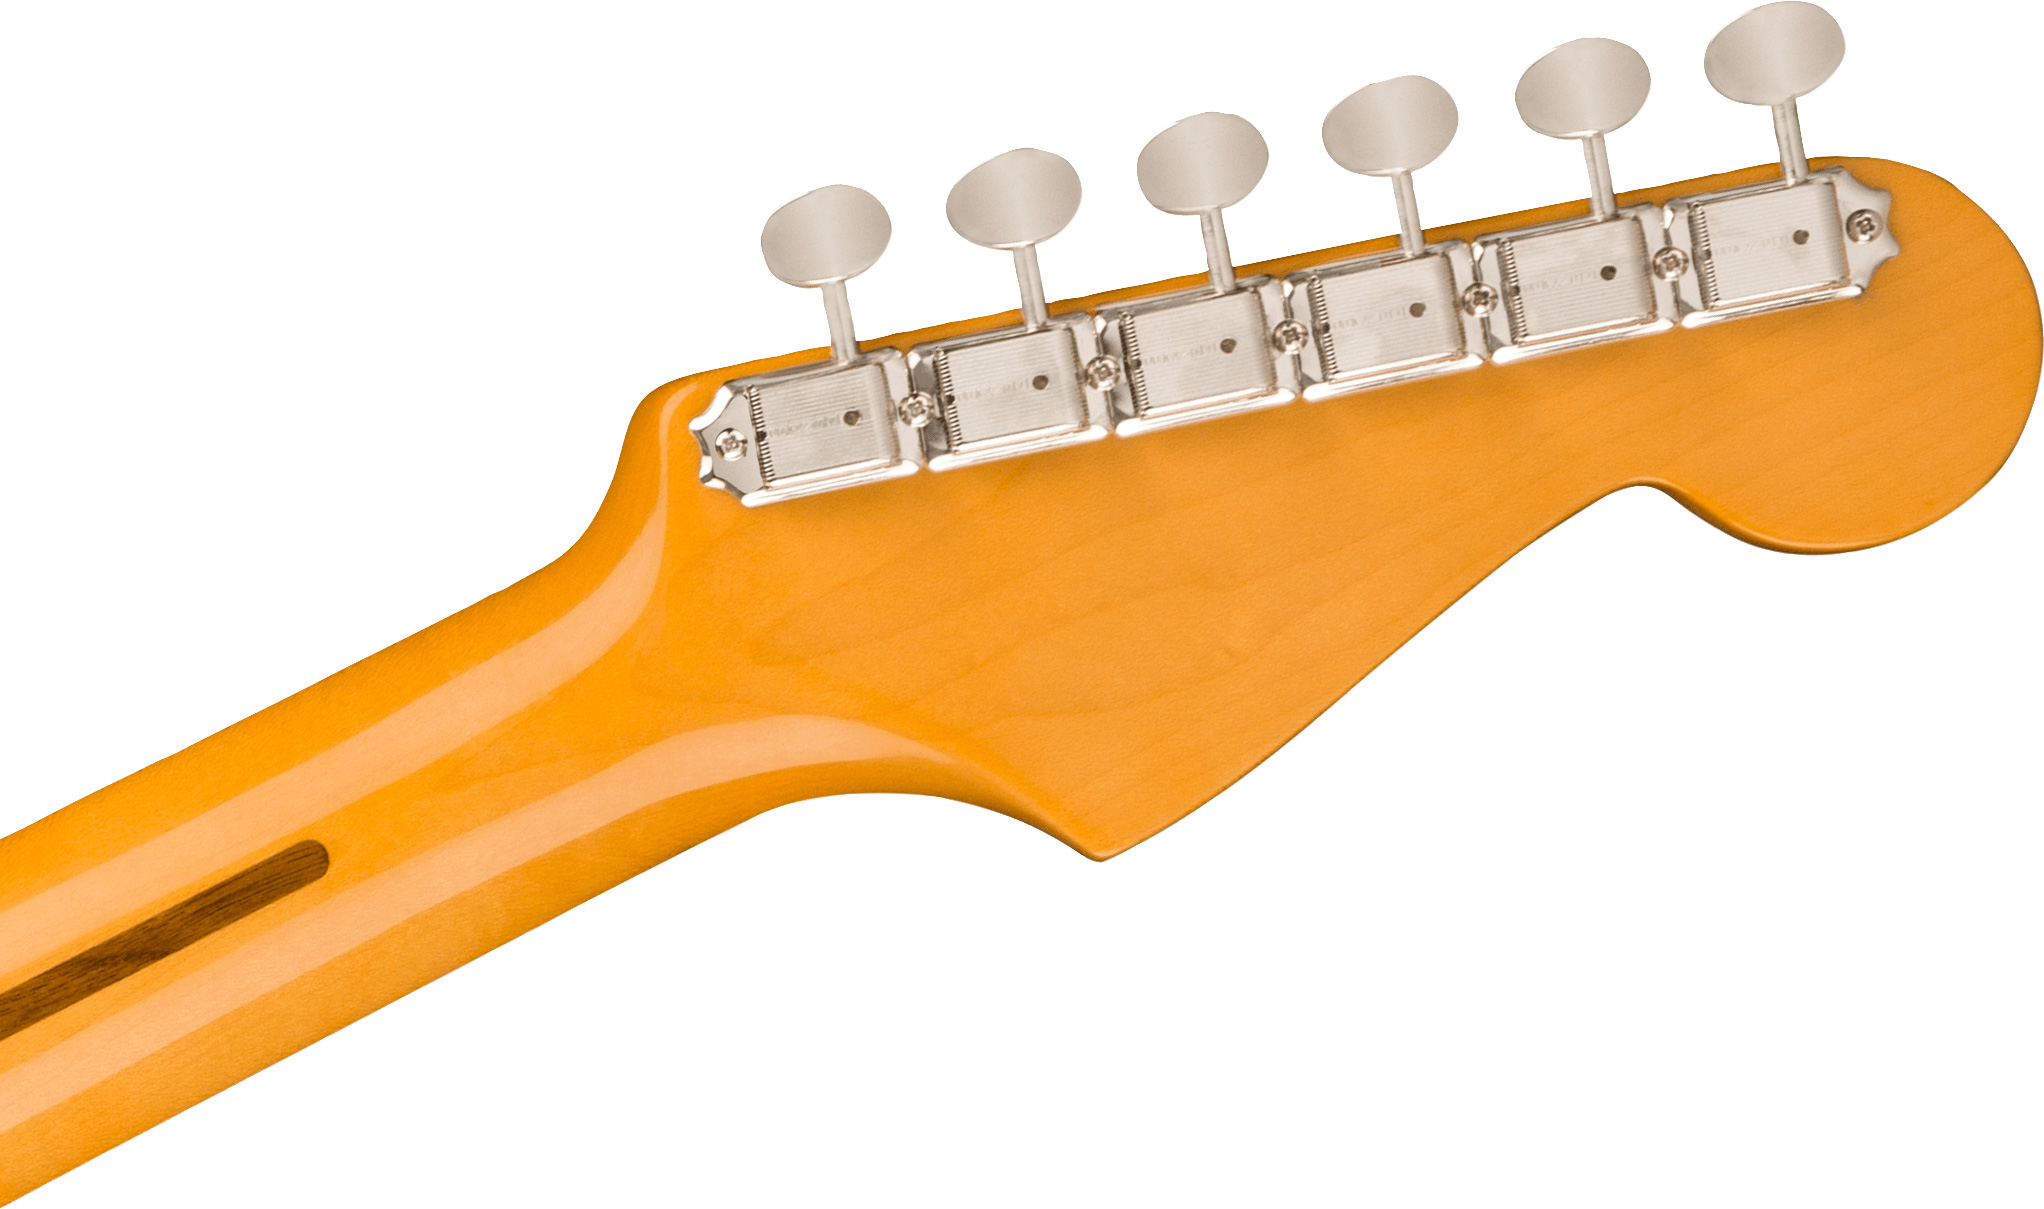 Fender Strat 1957 American Vintage Ii Lh Gaucher Usa 3s Trem Mn - 2-color Sunburst - Left-handed electric guitar - Variation 3